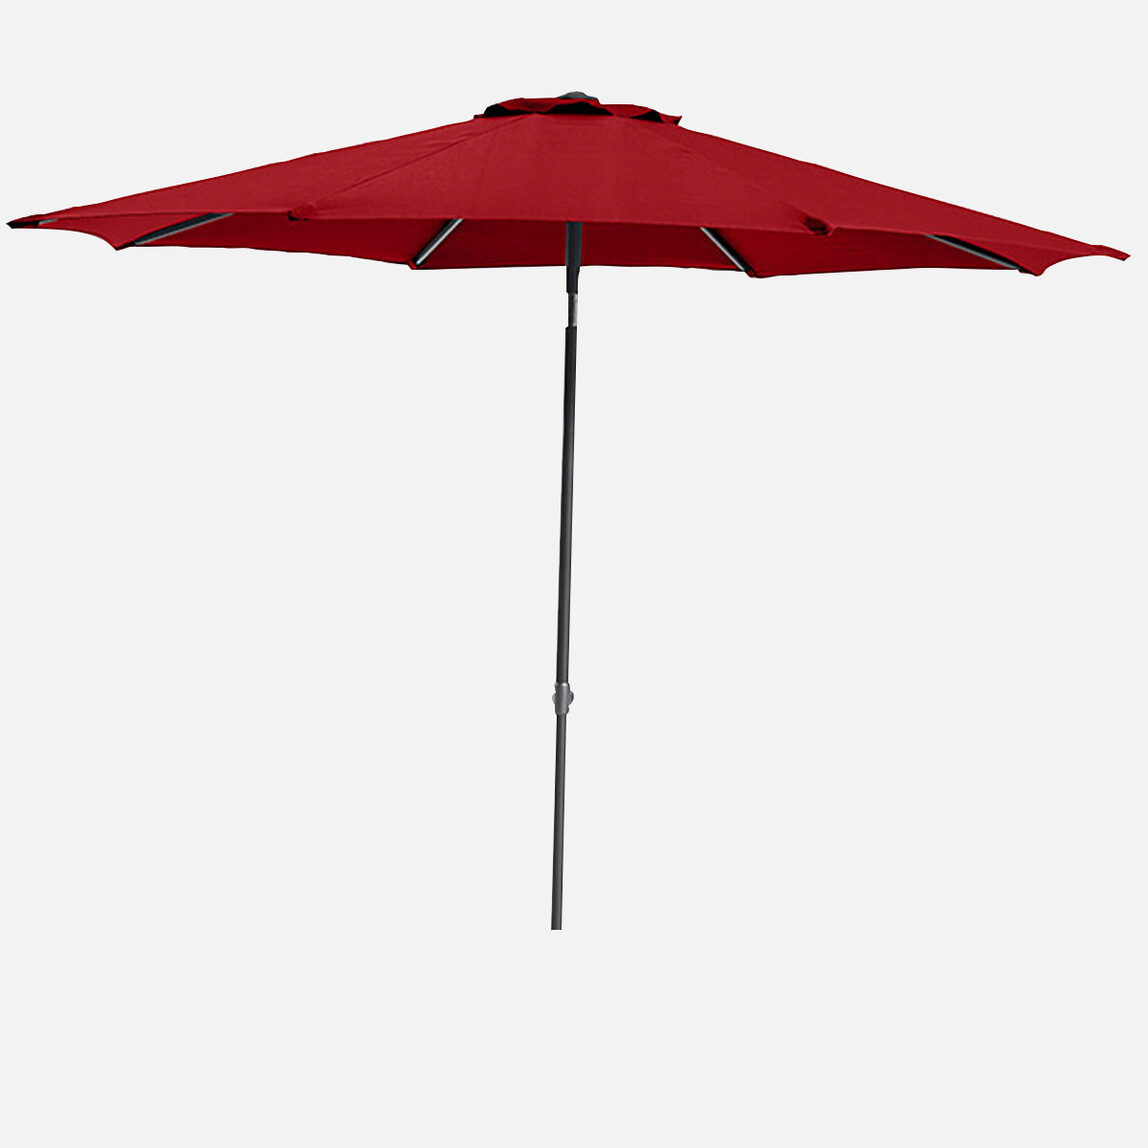    Sunfun Torino Şemsiye Kırmızı 270 cm 